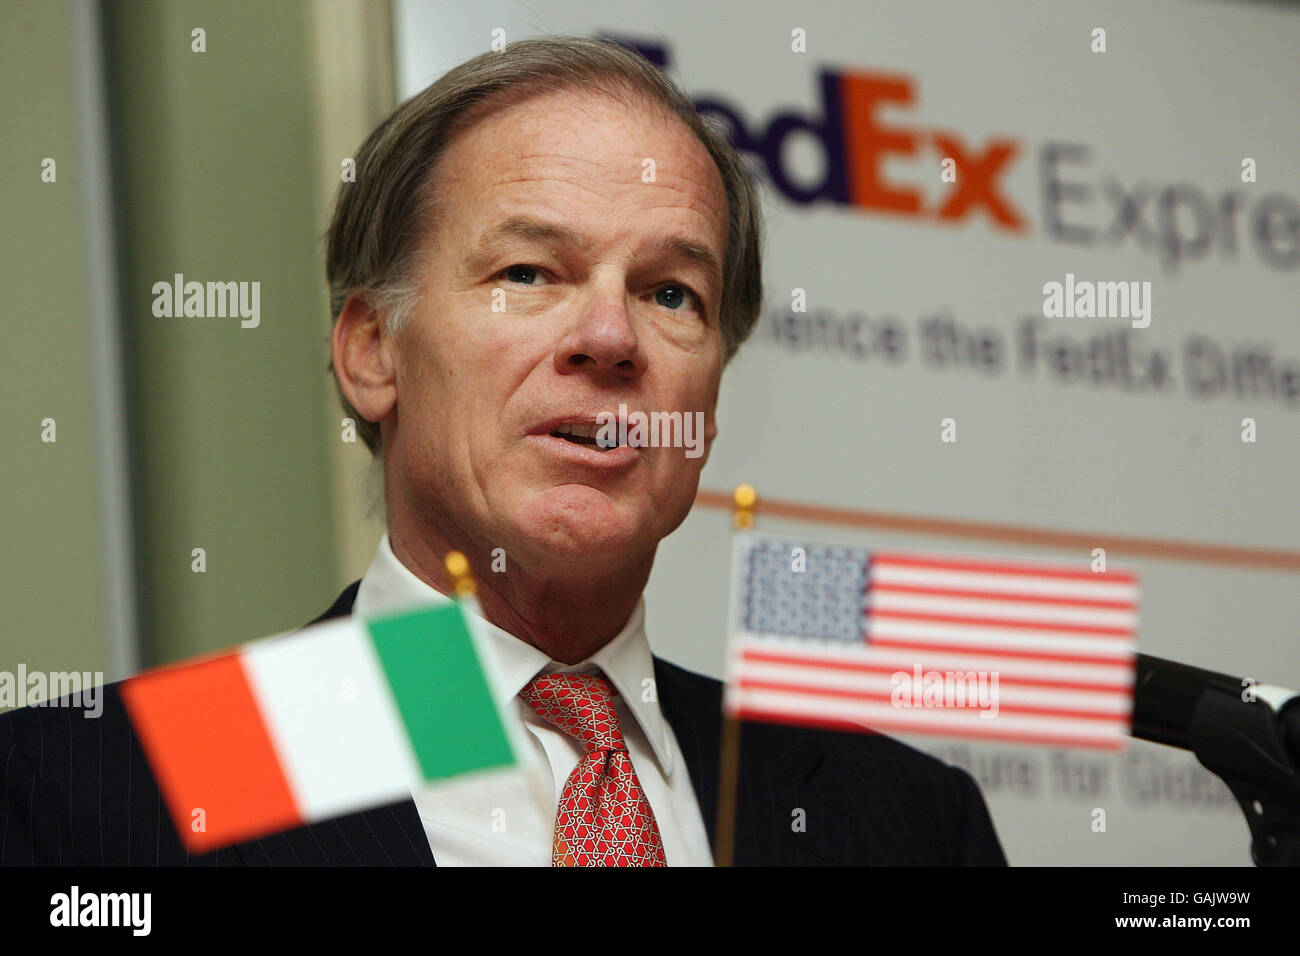 El Embajador de los Estados Unidos en Irlanda, Thomas C. Foley, cuyo mandato diplomático está previsto que termine a principios del próximo año, habló en el almuerzo anual que celebra el Instituto de Directores de Irlanda en el hotel Four Seasons de Dublín. Foto de stock